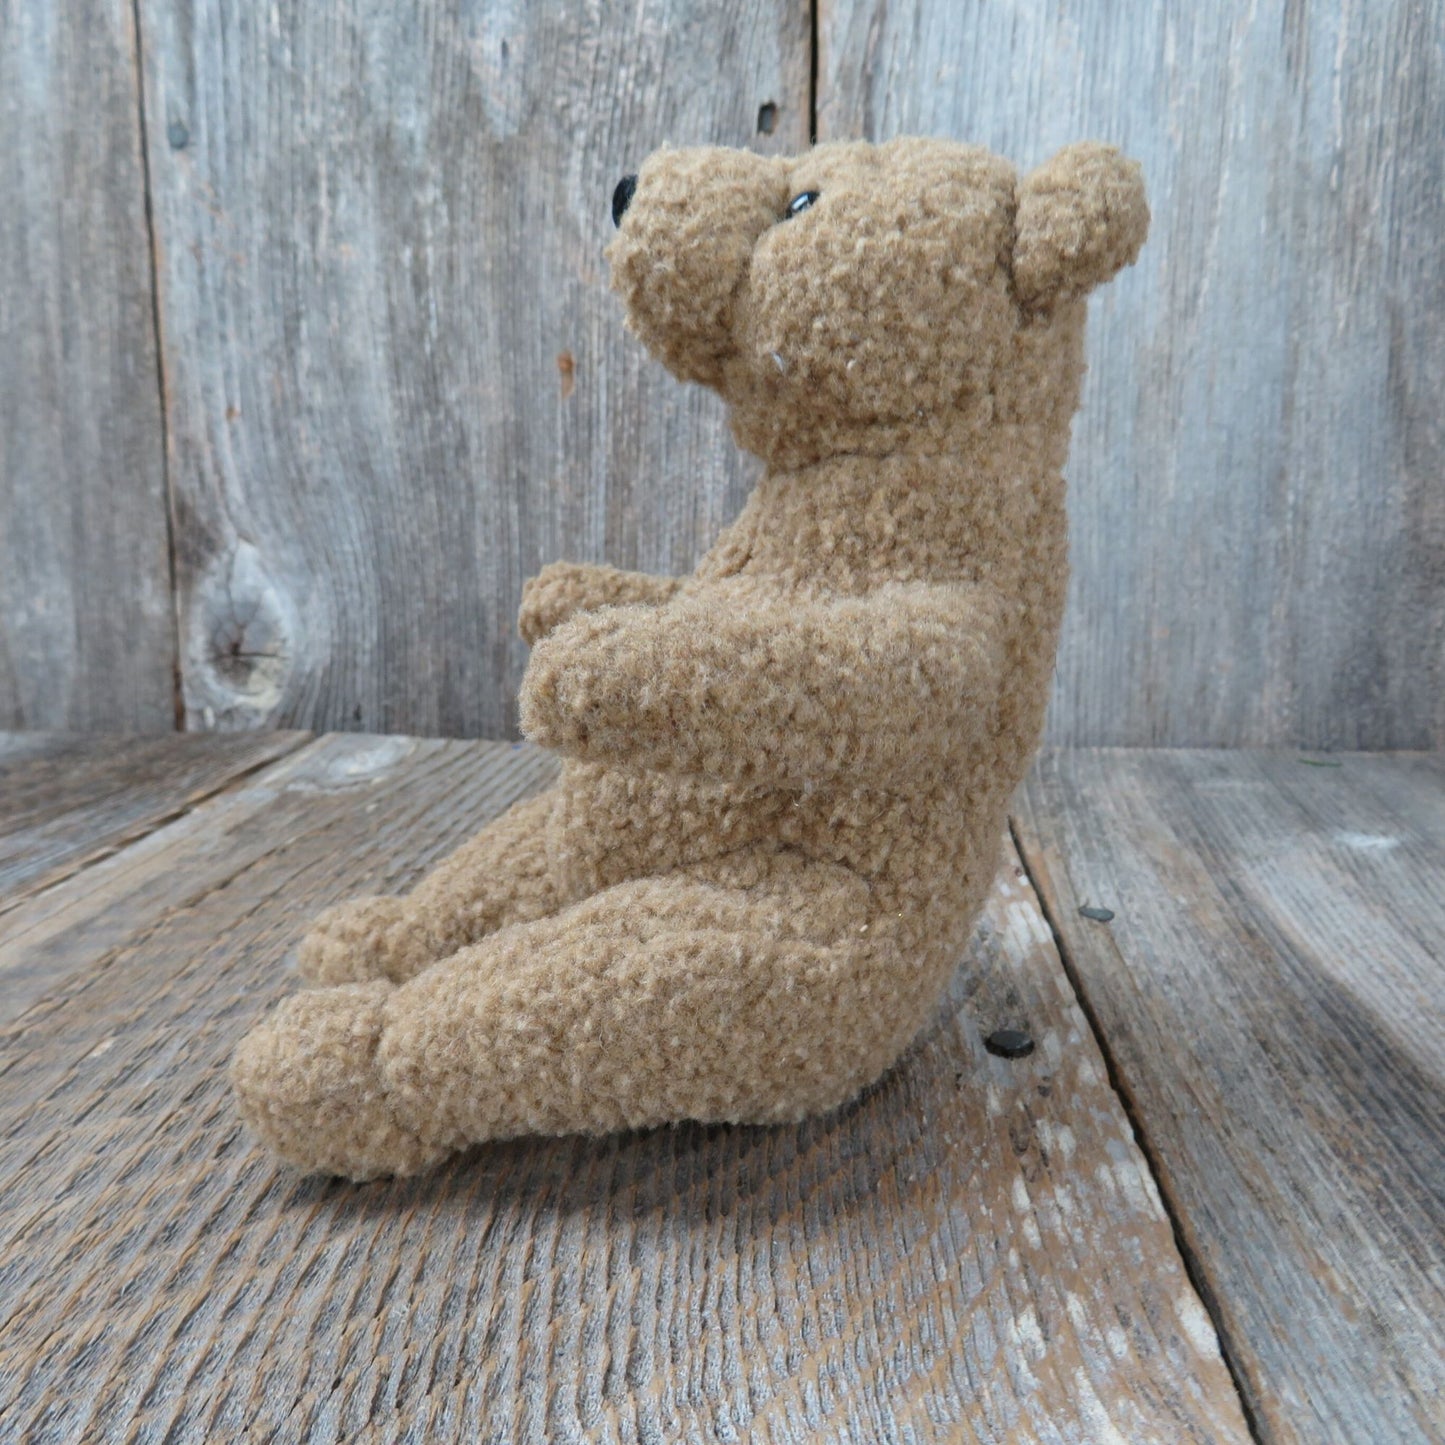 Teddy Bear Plush POCO  Gund Brown Sitting Realistic Stuffed Animal